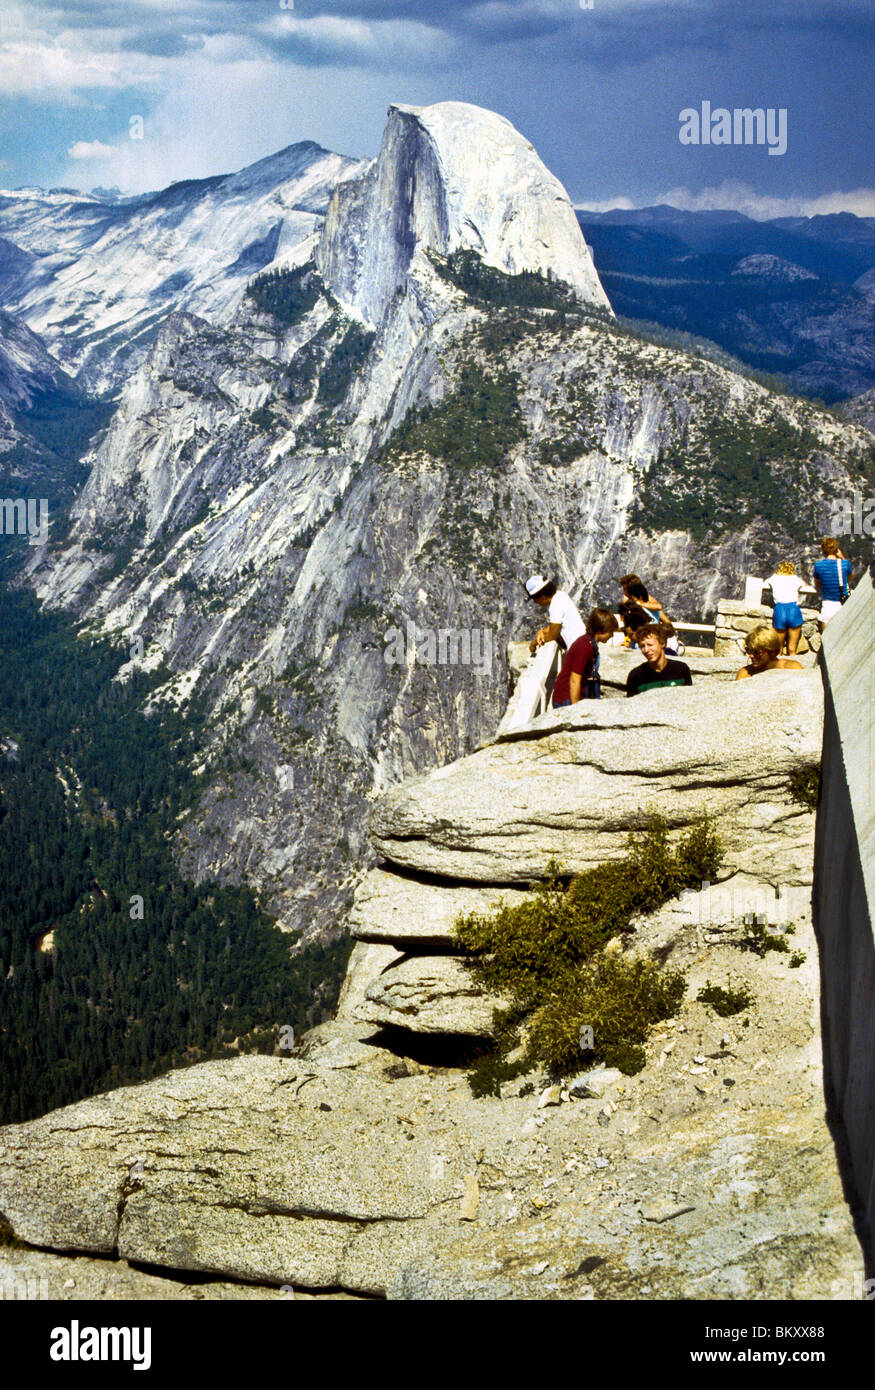 Demi dôme monument Yosemite National Park California USA pierre de granit glacier point de coupe visualiser nature randonnée naturel storm Banque D'Images